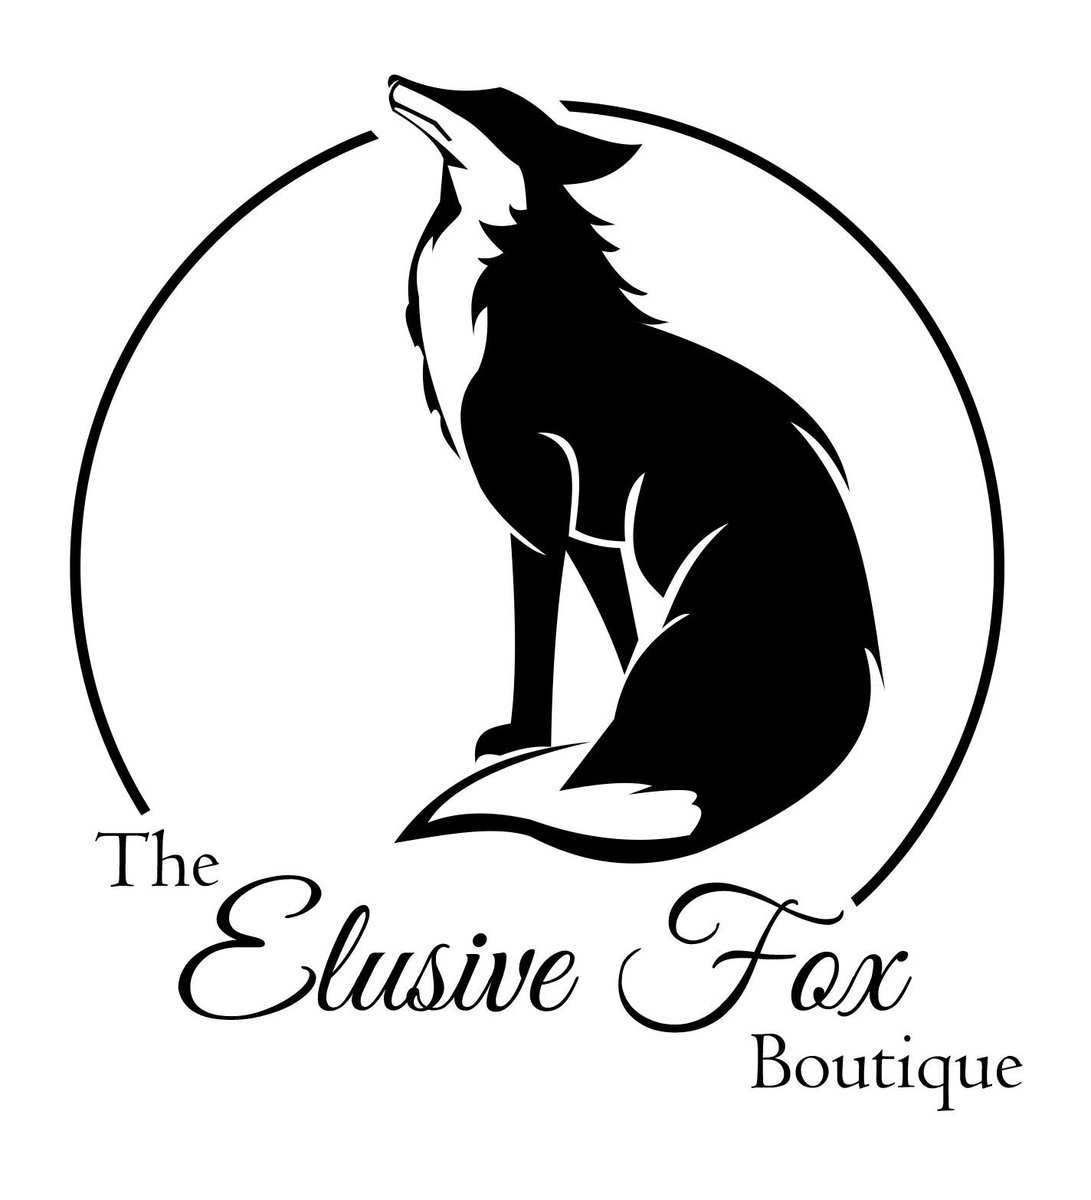 The Elusive Fox